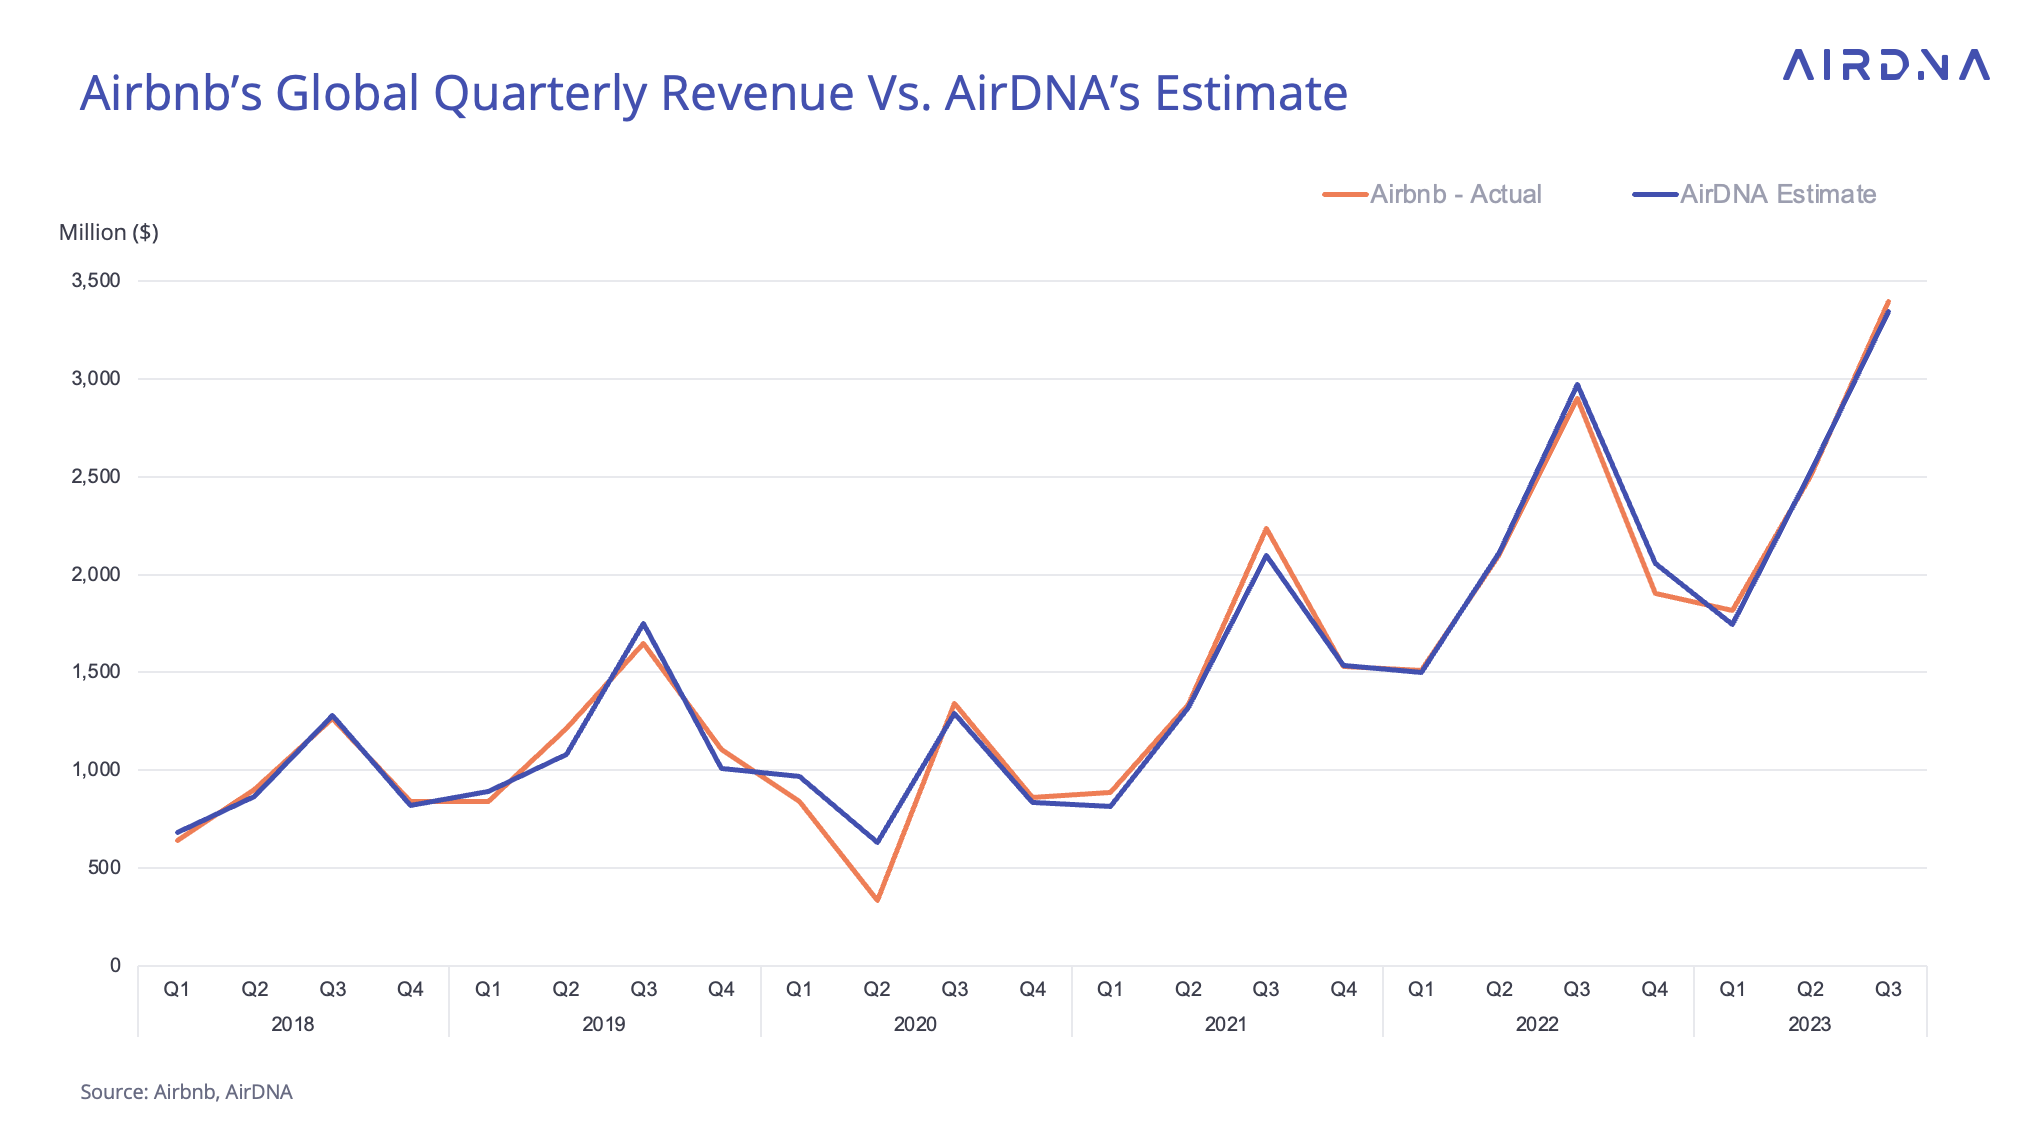 So sánh dữ liệu dự đoán của AirDNA và dữ liệu thực tế từ Airbnb